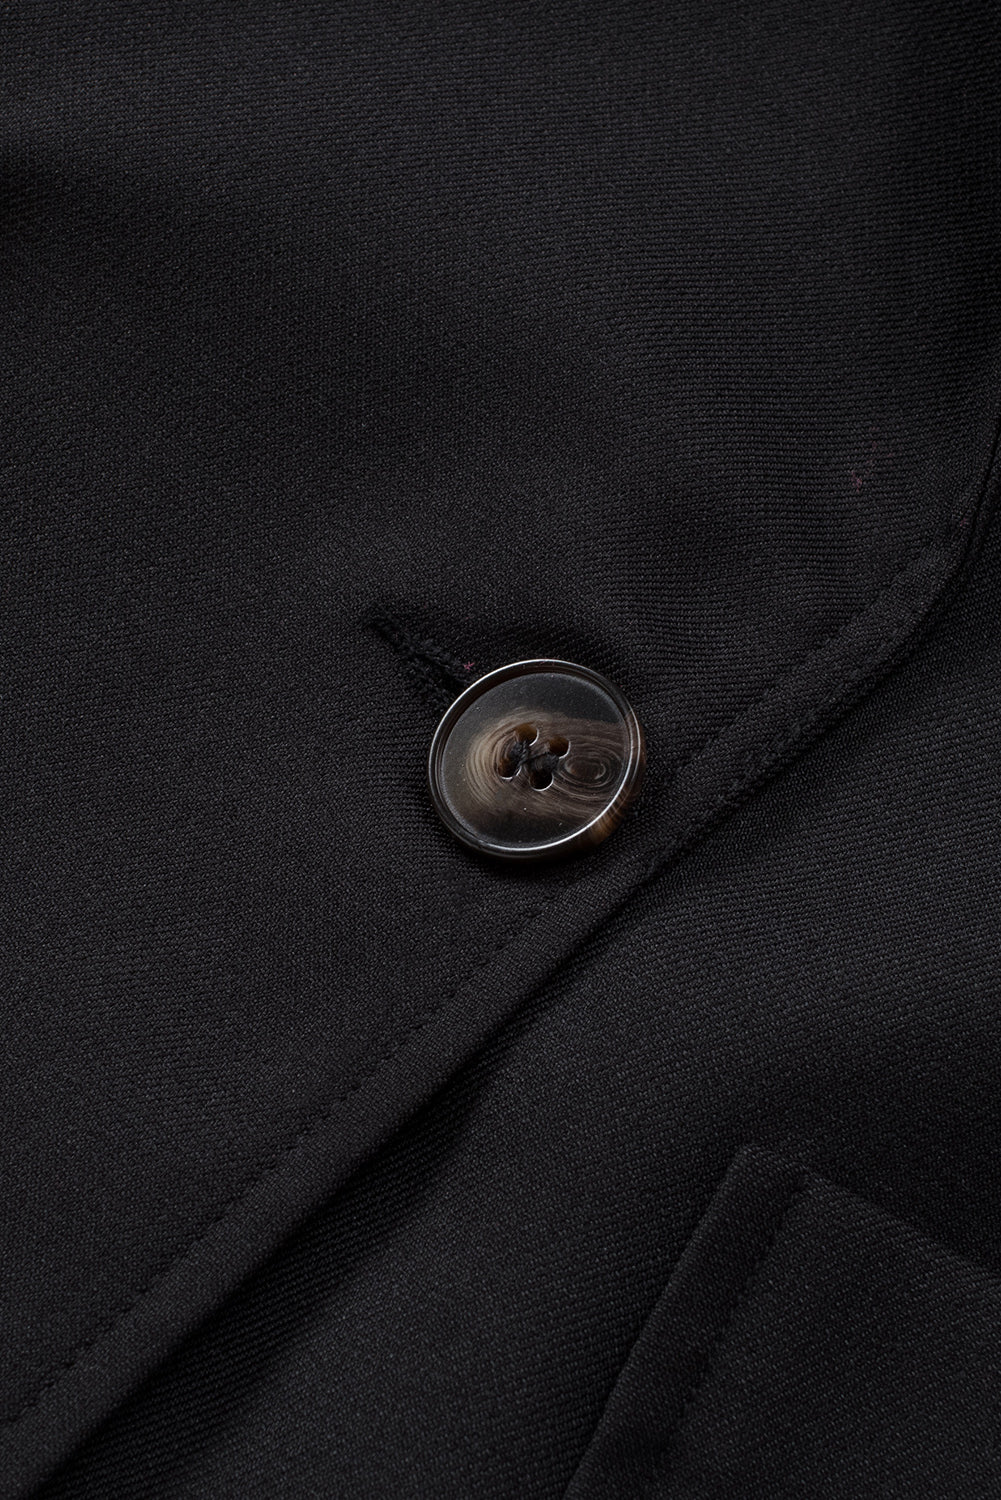 Blazer nero con colletto revers abbottonato e tasca